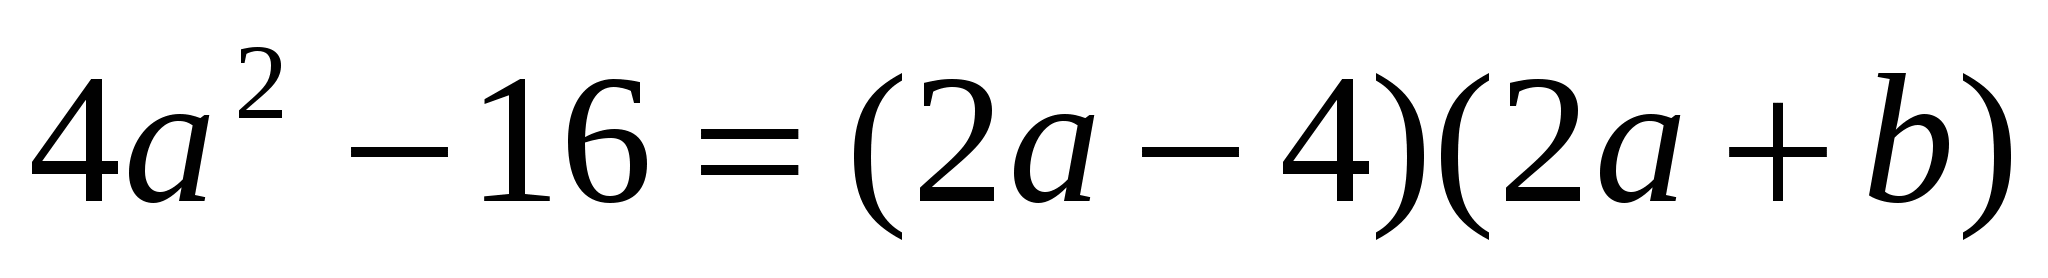 7 сыныпқа арналған күнтізбелік жоспар«Қысқаша көбейту формулалары» тақырыбында